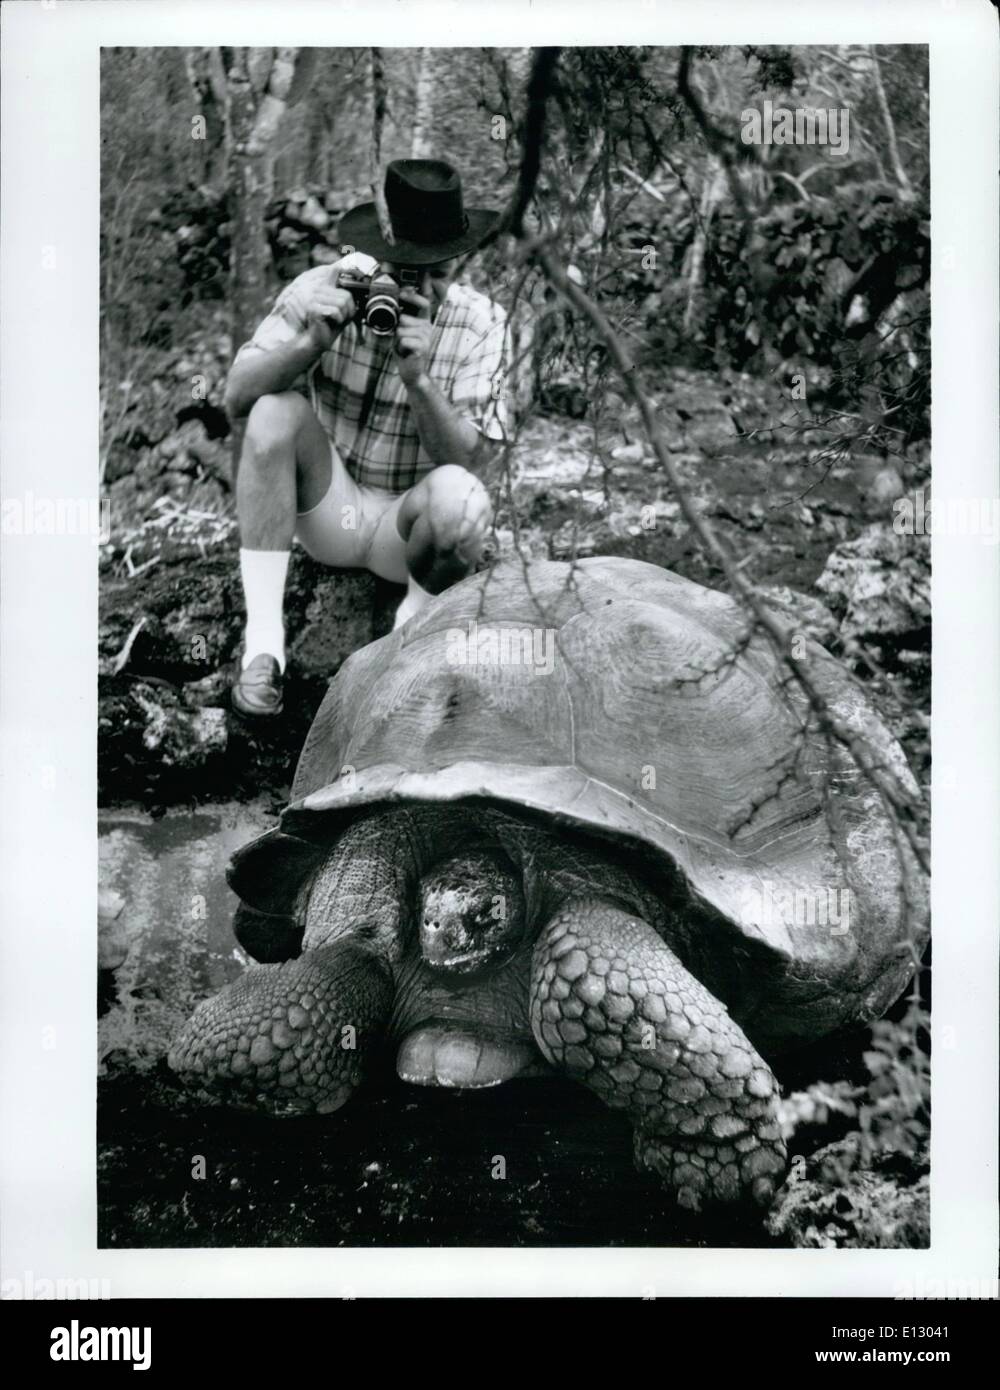 26. Februar 2012 - prähistorische Schildkröten gewinnen Wissenschaftler... und Ausflügler Galapagos-Inseln, Ecuador S.A.--400 Meilen vor der Küste von Ecuador, den Galapagos-Inseln wurden von Charles Darwin '' ein lebendiges Labor der Evolution'' genannt und sind noch bewohnt von prähistorischen Tieren, darunter die berühmten Riesenschildkröten, '' Galapagos'' in spanischer Sprache, die der Inselgruppe ihren Namen gab. durch AirJet-Service vom Festland und kleinen Kreuzfahrtschiffen rund um die Inseln beginnt Ecuador nun zur Förderung des Tourismus auf die Galapagosinseln, die Entdeckung und Wissenschaft mit Sightseeing und Freizeit kombiniert Stockfoto